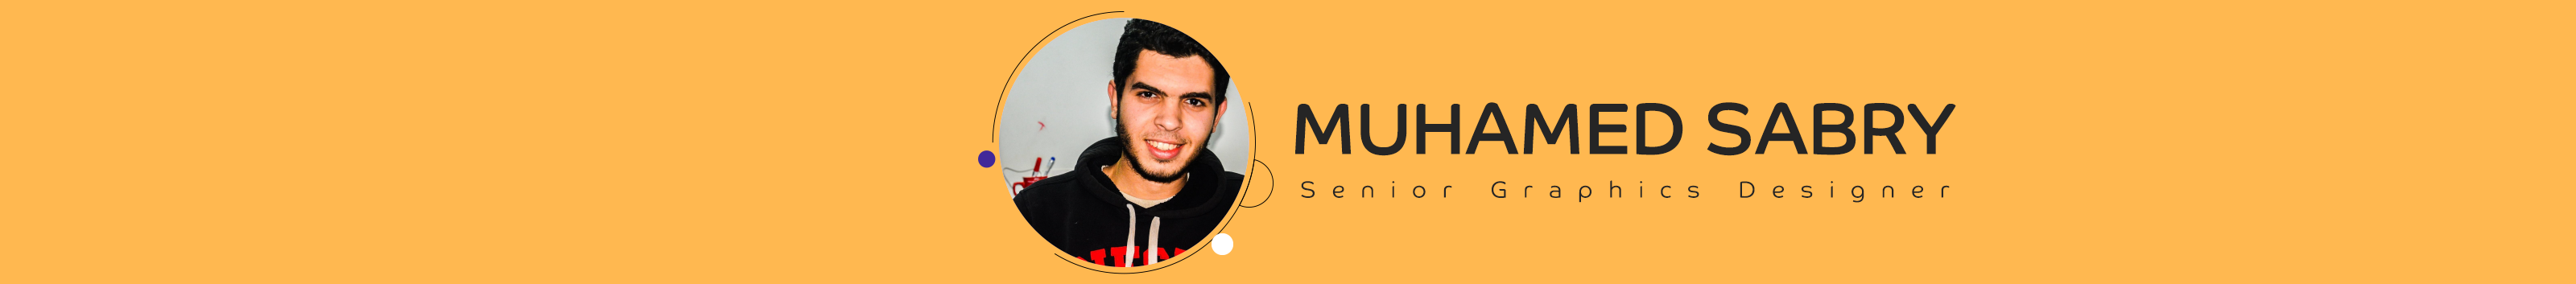 Muhamed Sabry's profile banner